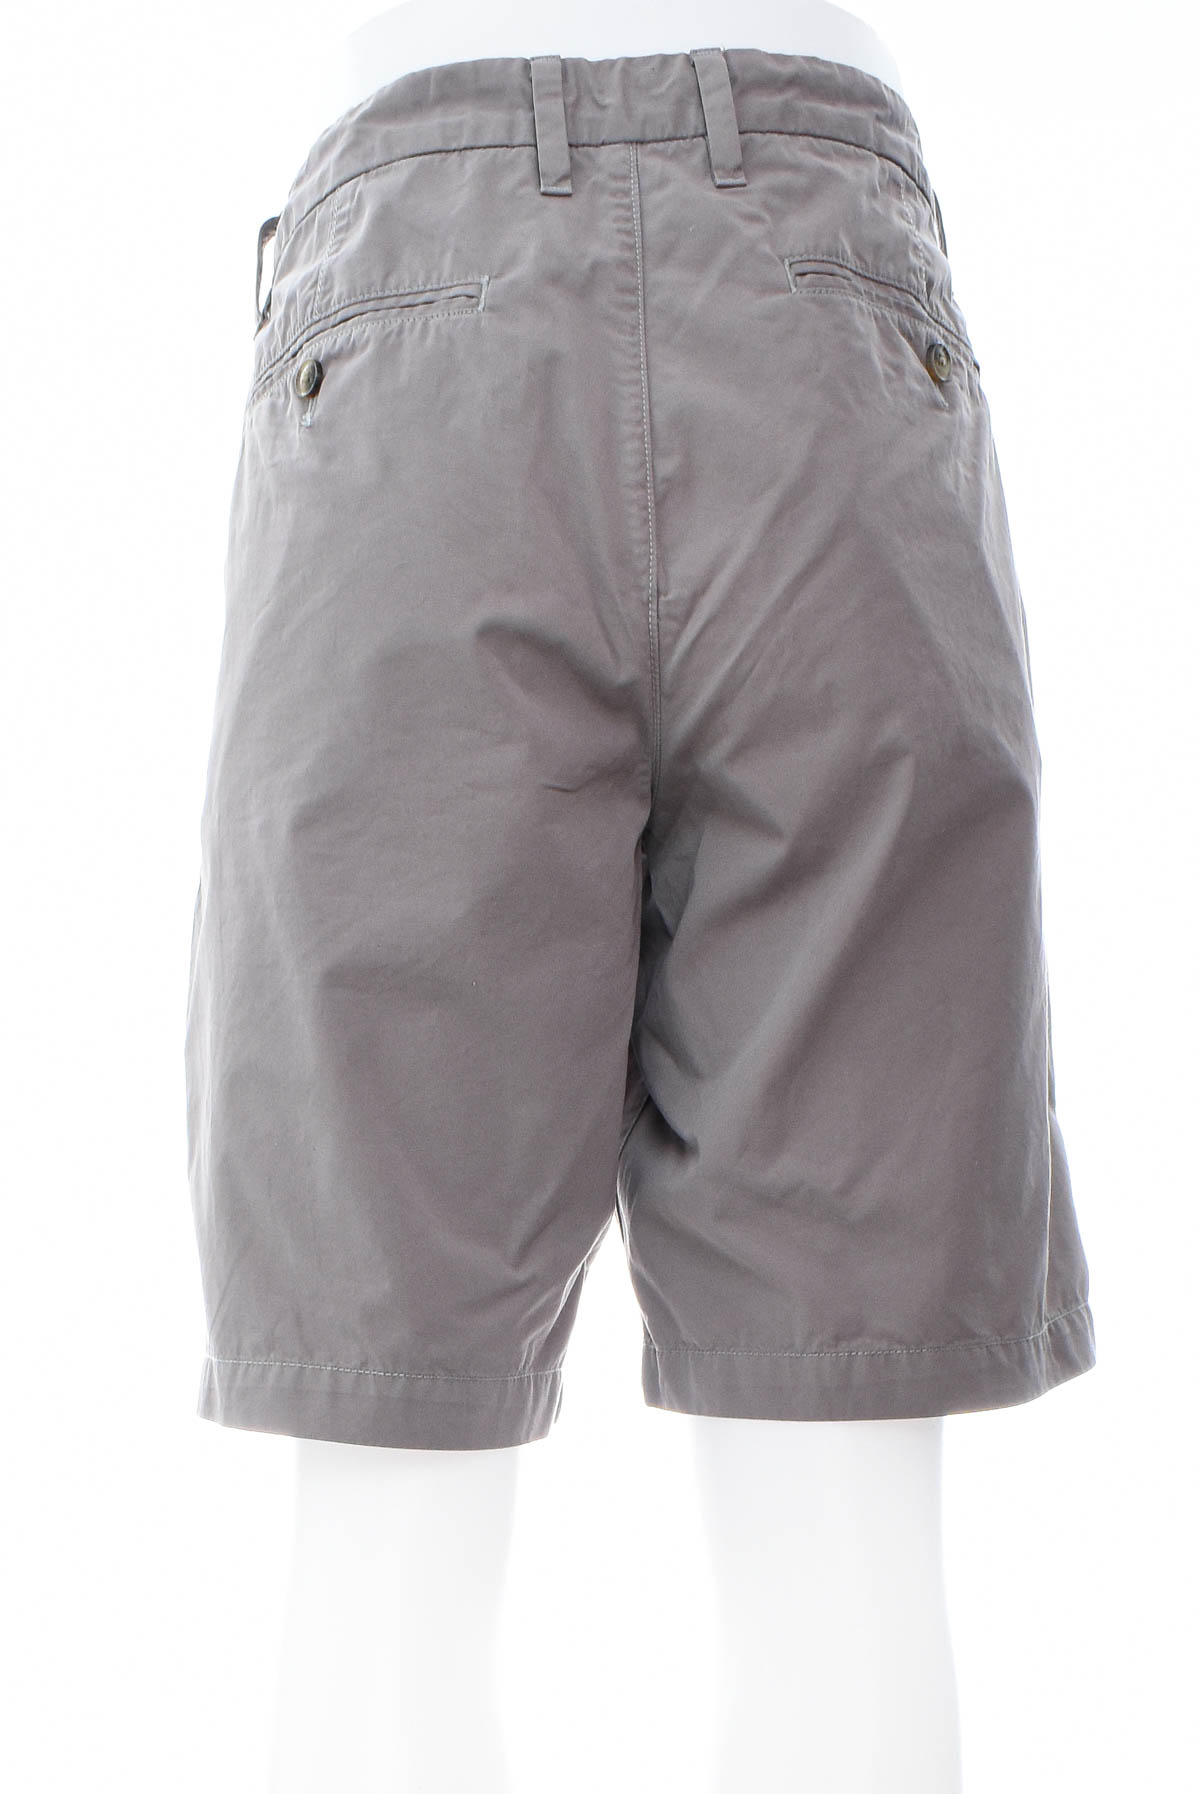 Men's shorts - TOMMY HILFIGER - 1